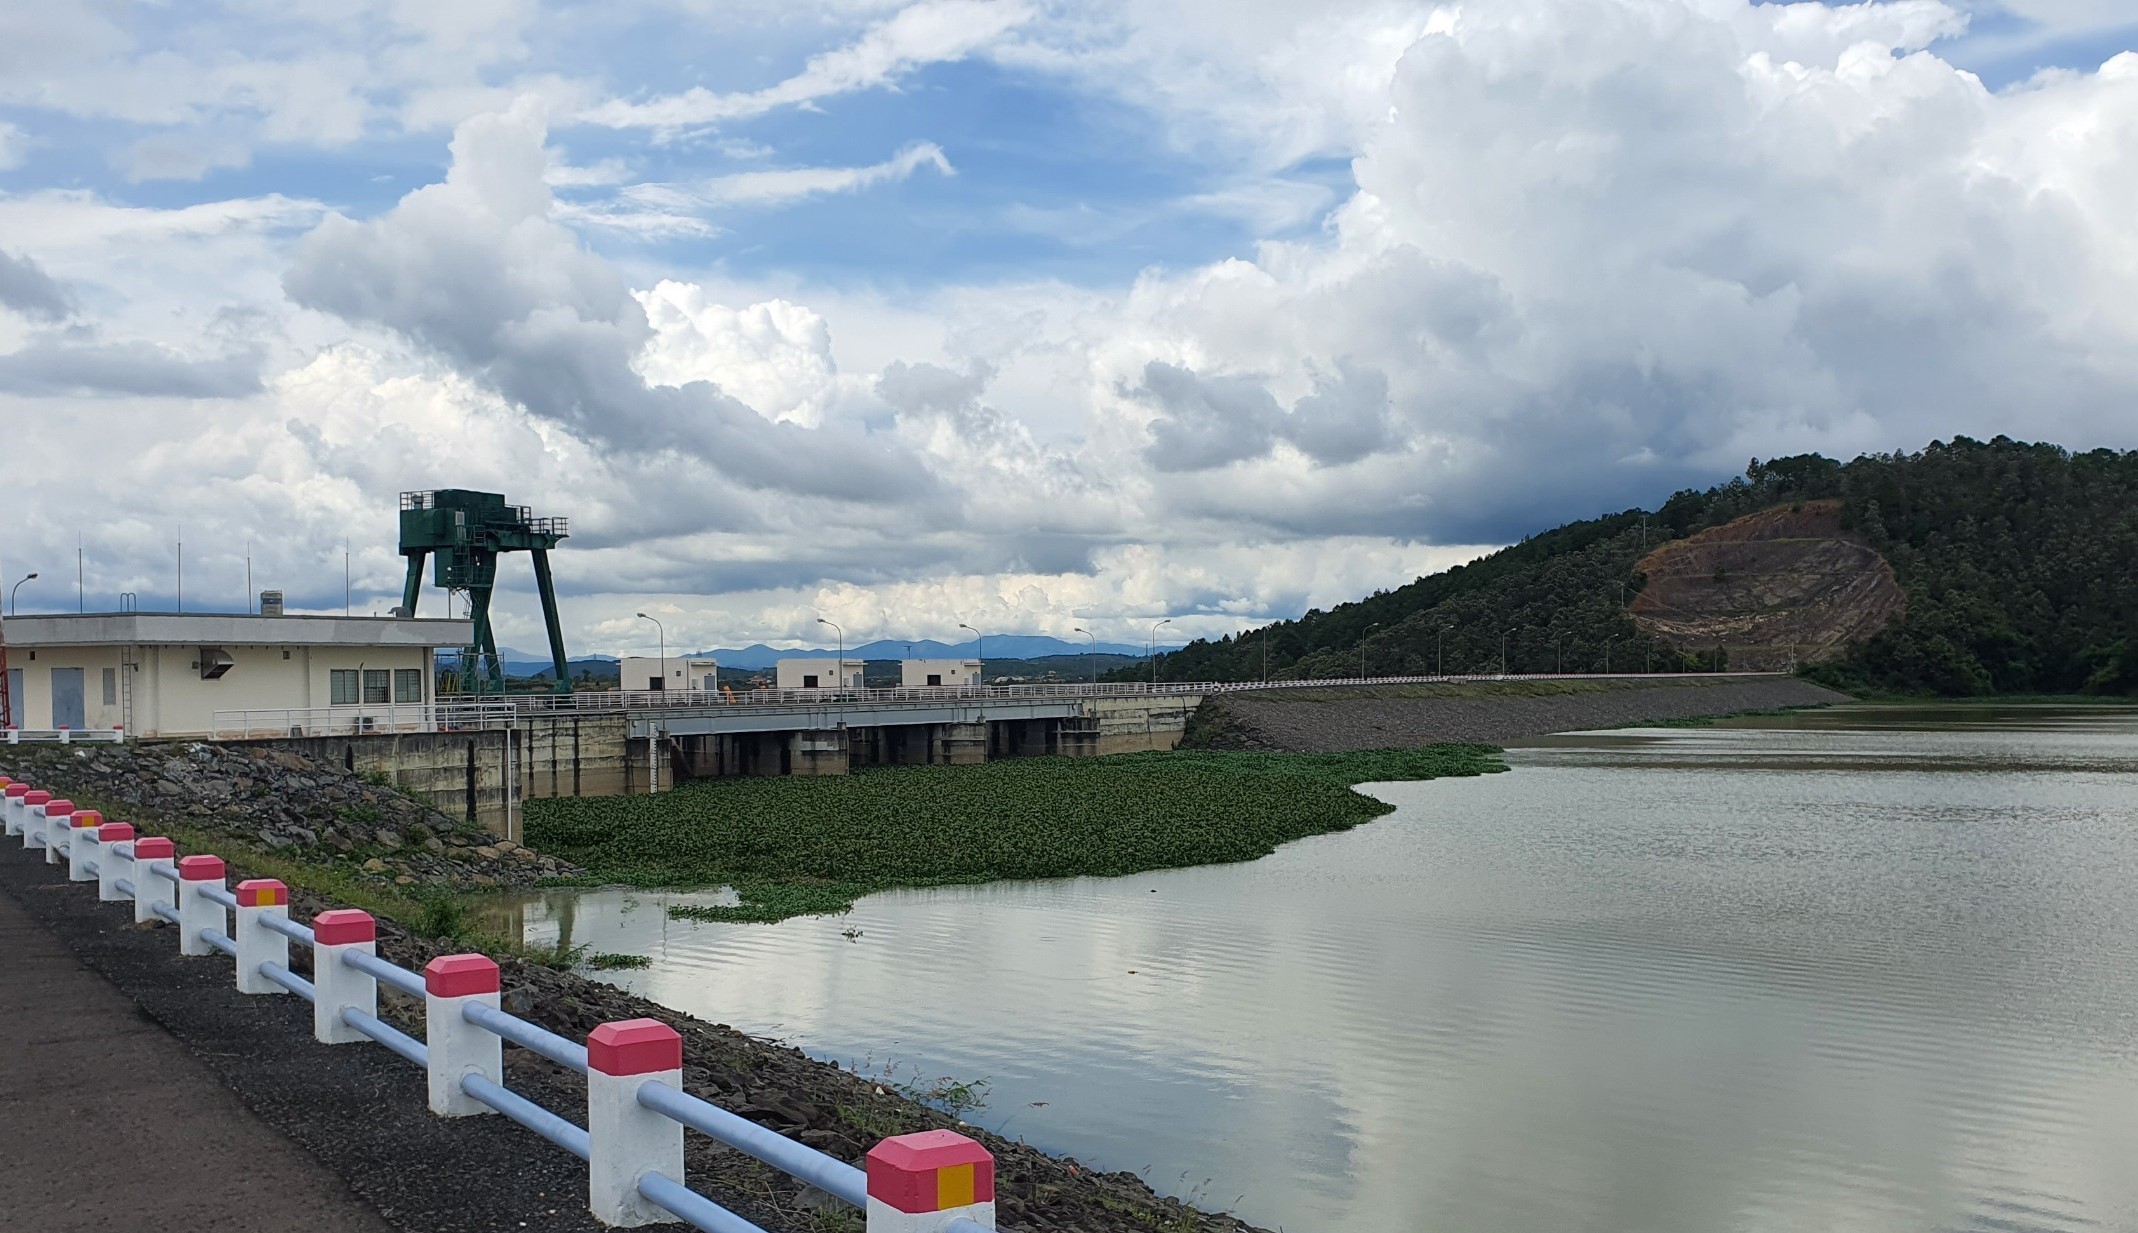 Bản tin: Tình hình phát điện, cấp nước chống hạn của Công ty Thủy điện Đại Ninh trong mùa khô 2022